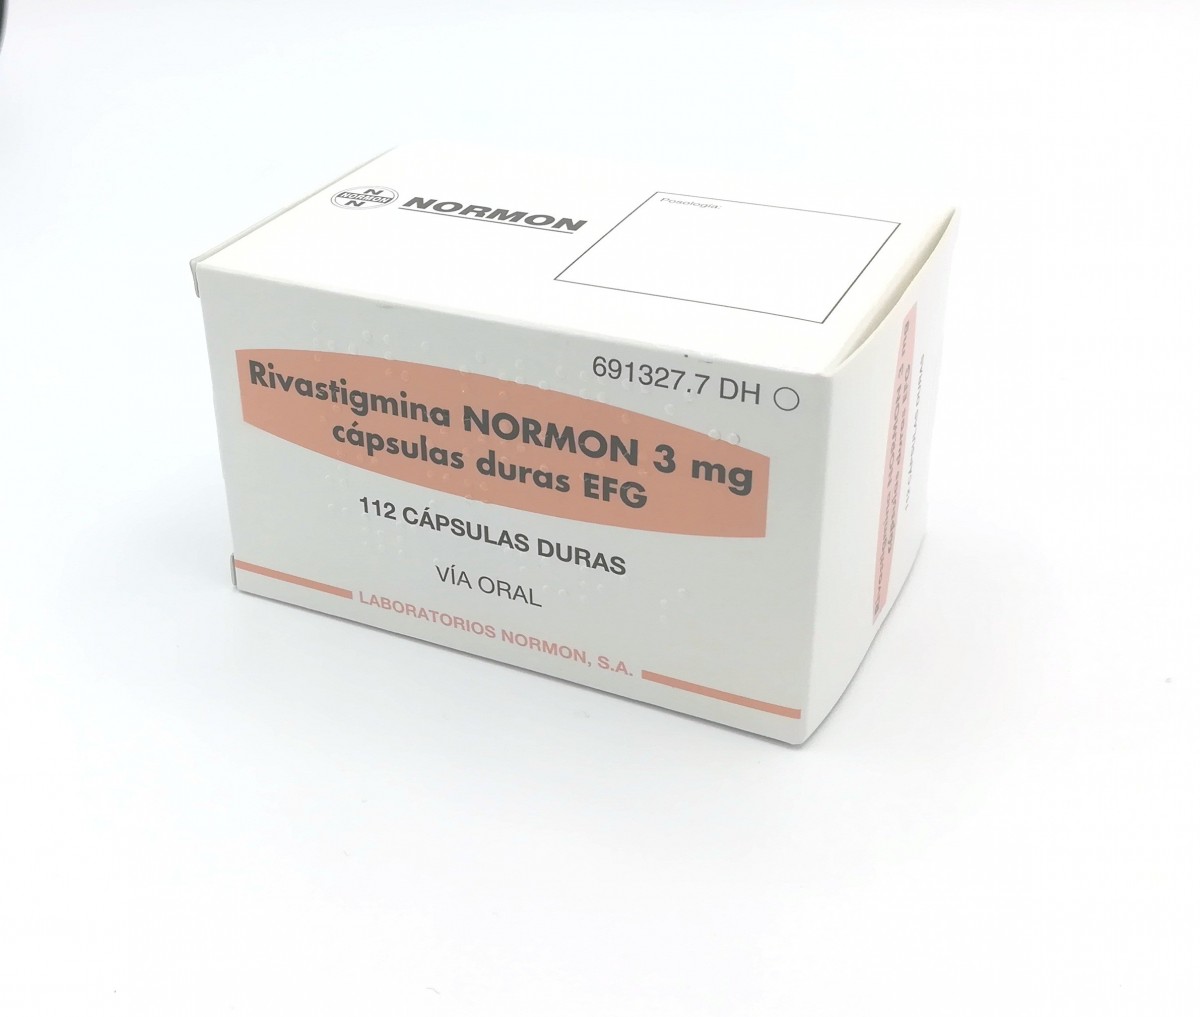 RIVASTIGMINA NORMON 3 mg CAPSULAS DURAS EFG , 56 cápsulas (Al/PVC/PVDC) fotografía del envase.